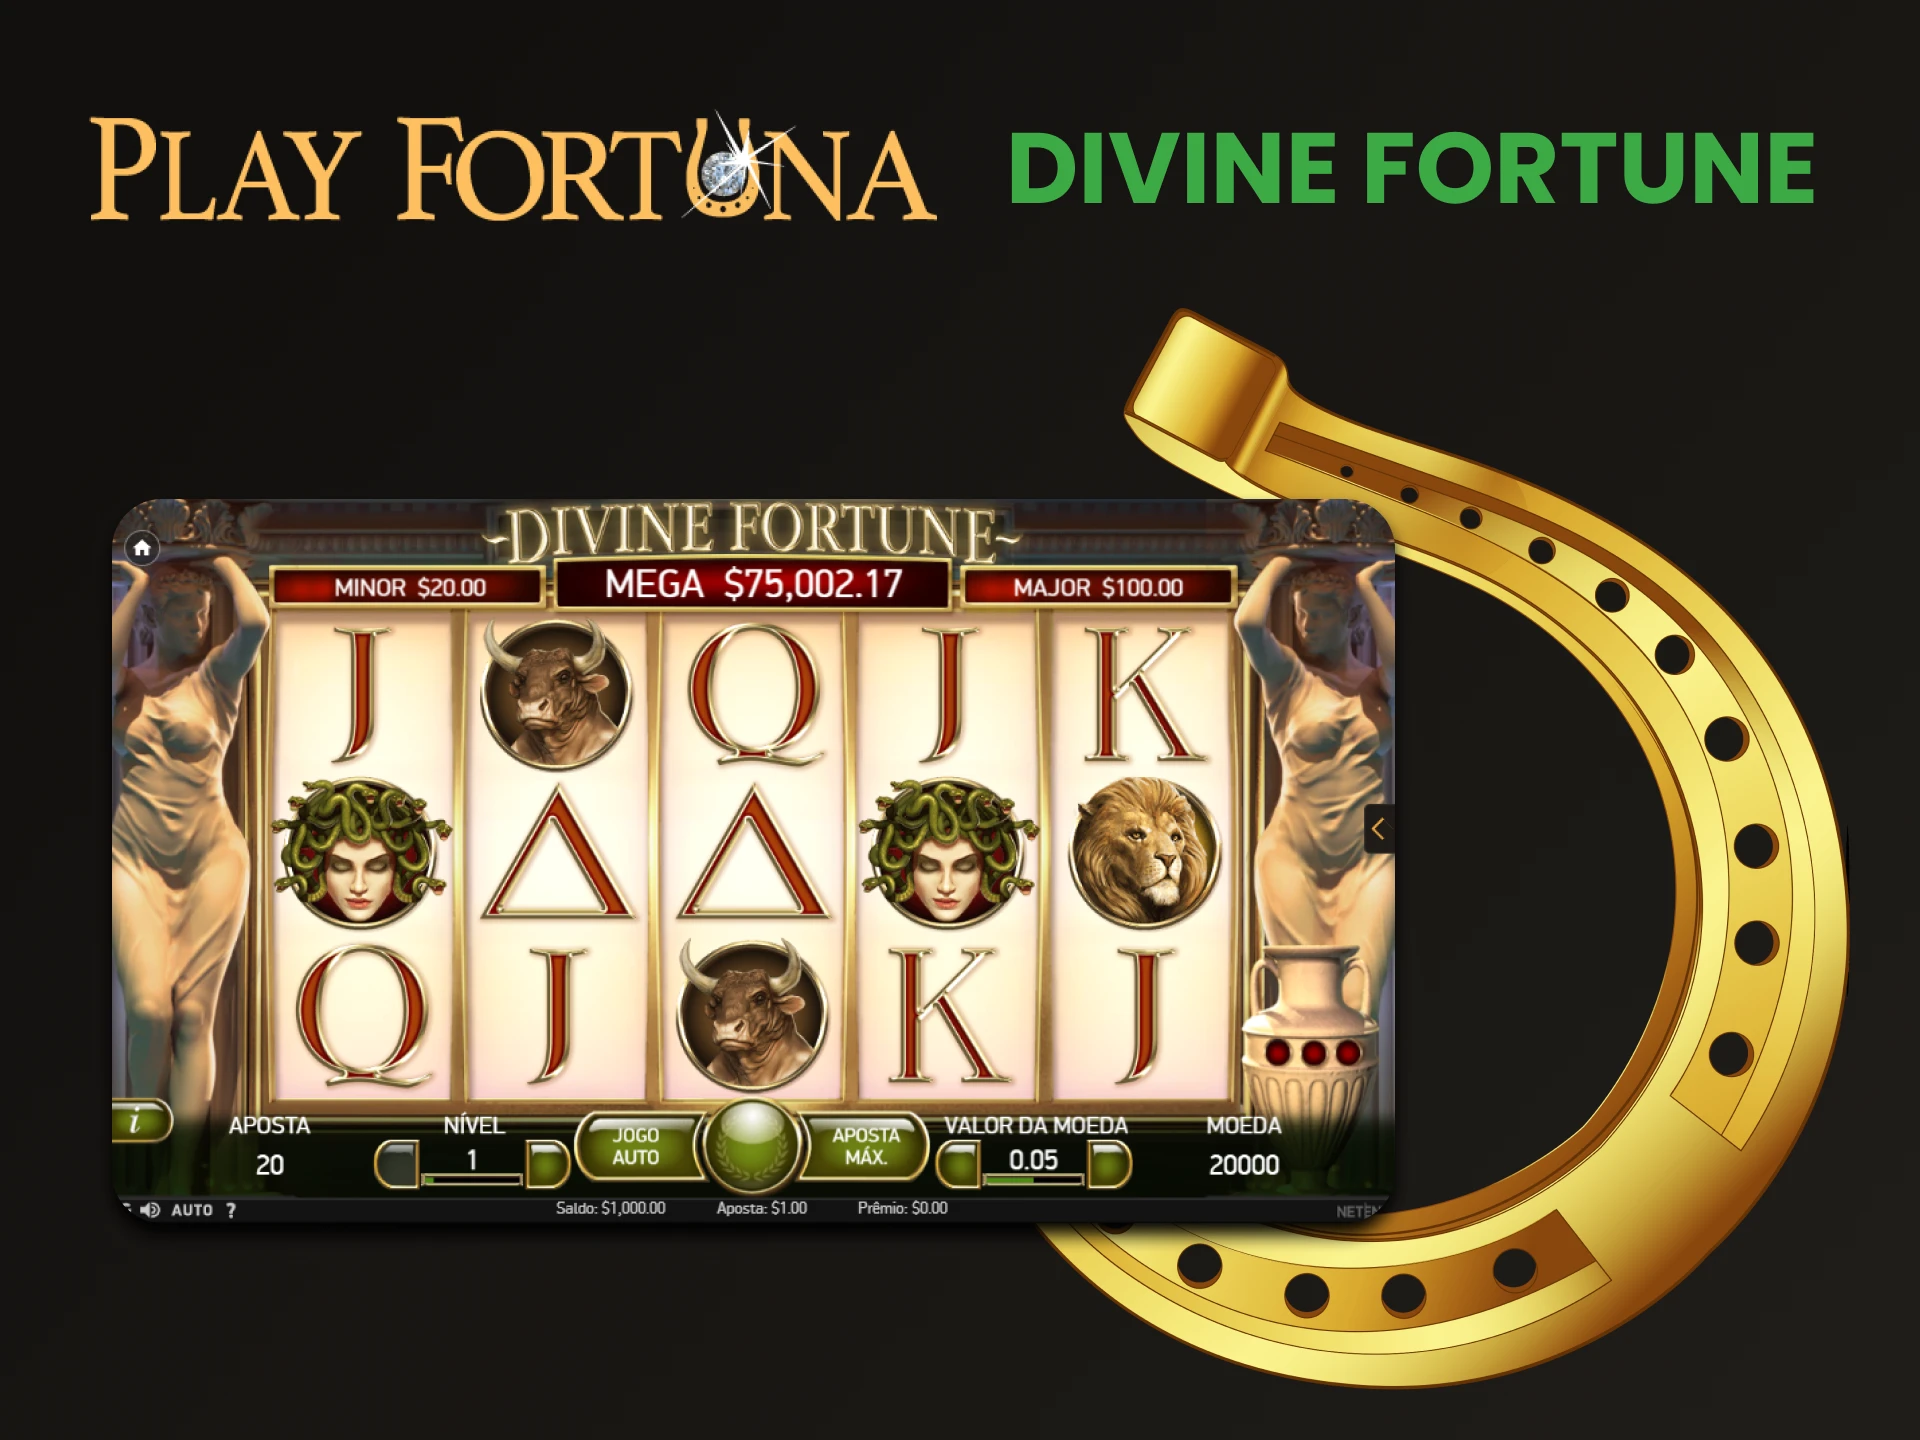 Para jogos de jackpot no Play Fortuna, escolha Divine Frotune.